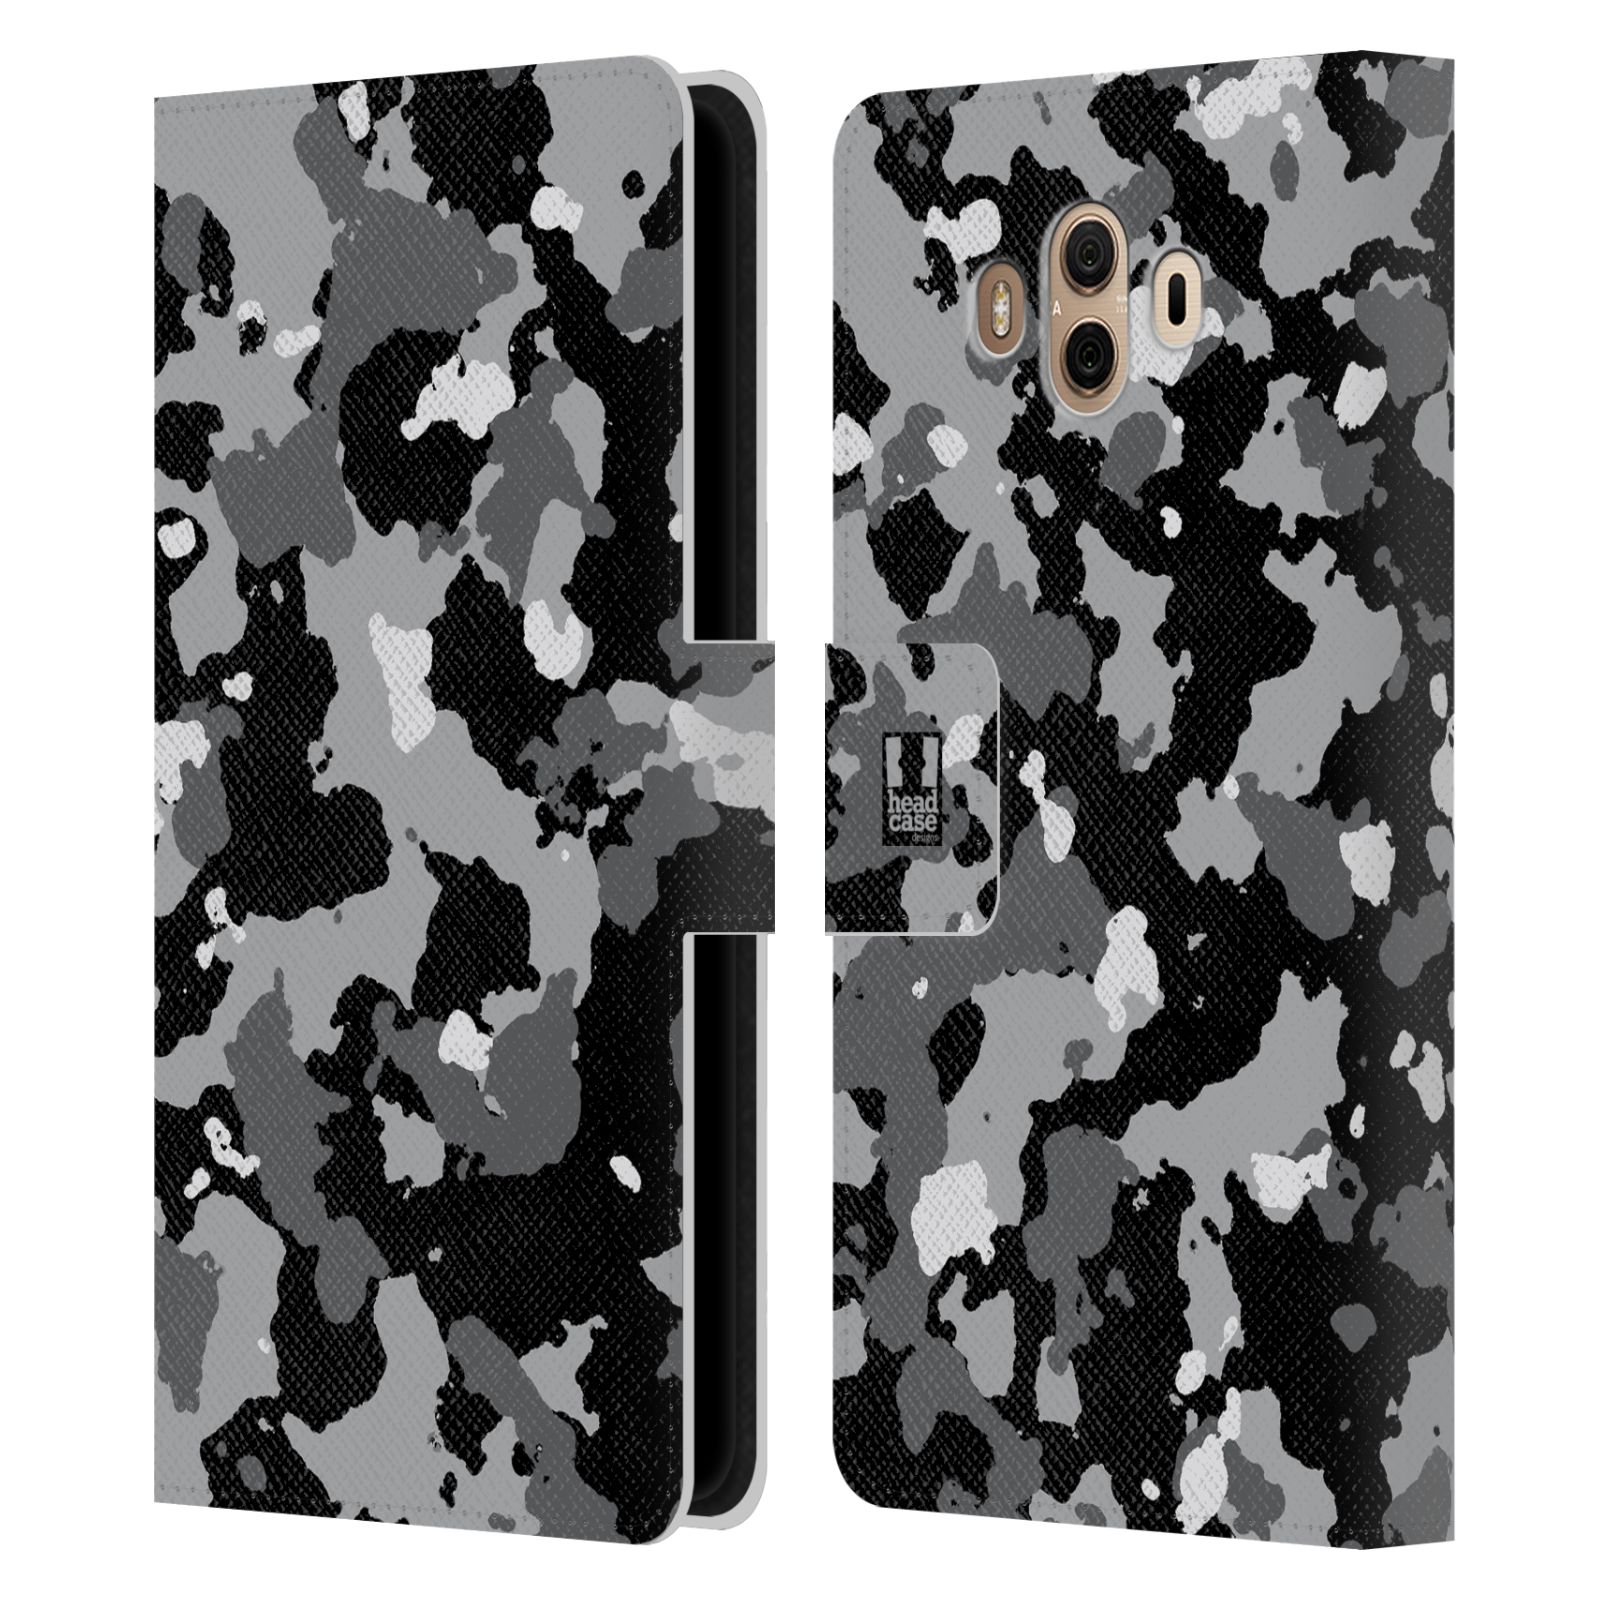 Pouzdro na mobil Huawei Mate 10 - Head Case - kamuflaž černá a šedá